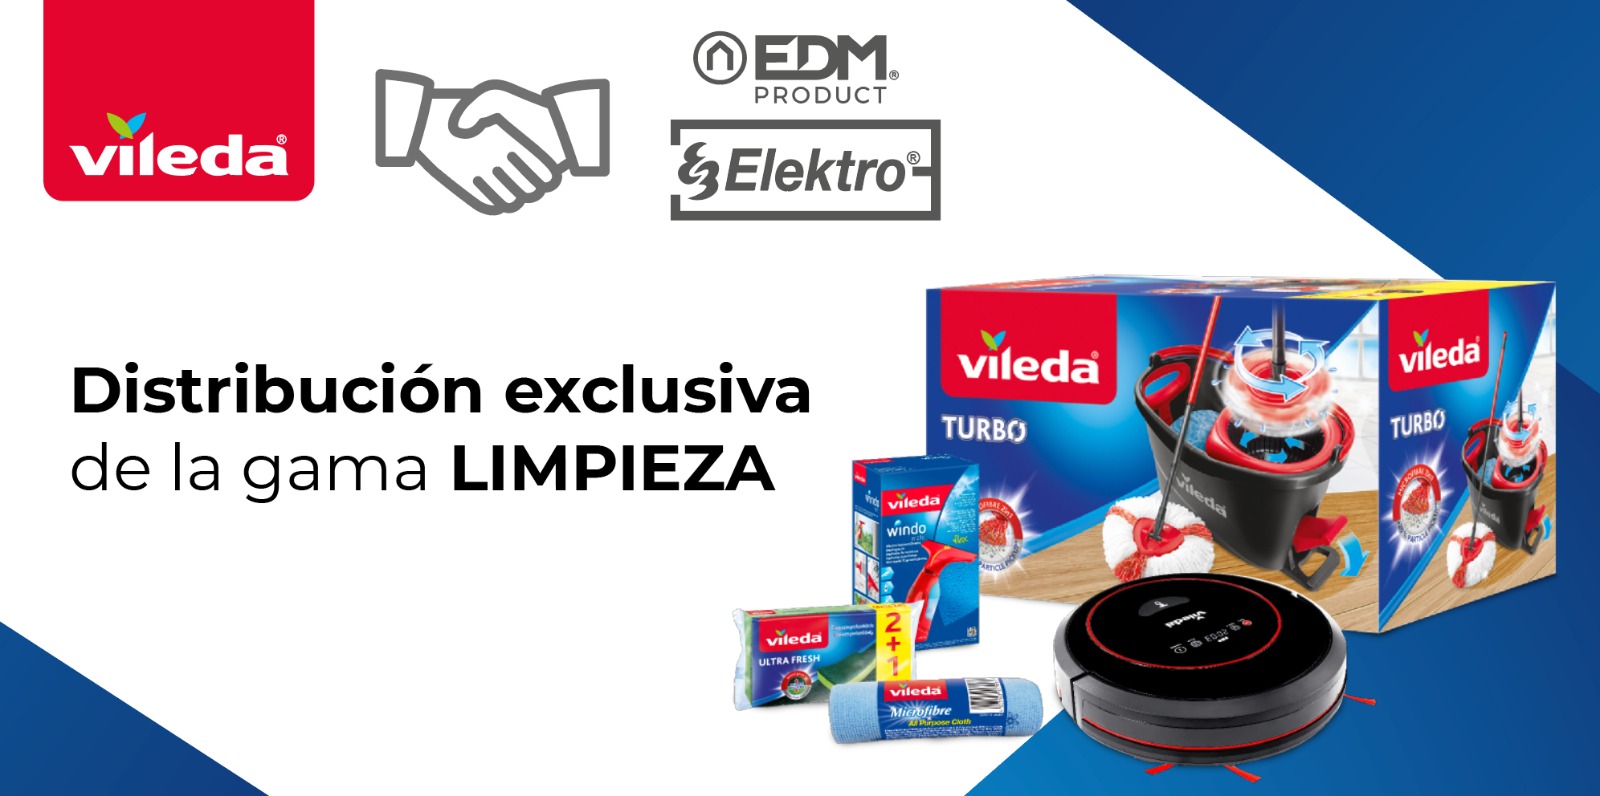 Elektro3-EDM unique distributeur exclusif de Vileda pour les secteurs de la quincaillerie et du bricolage.